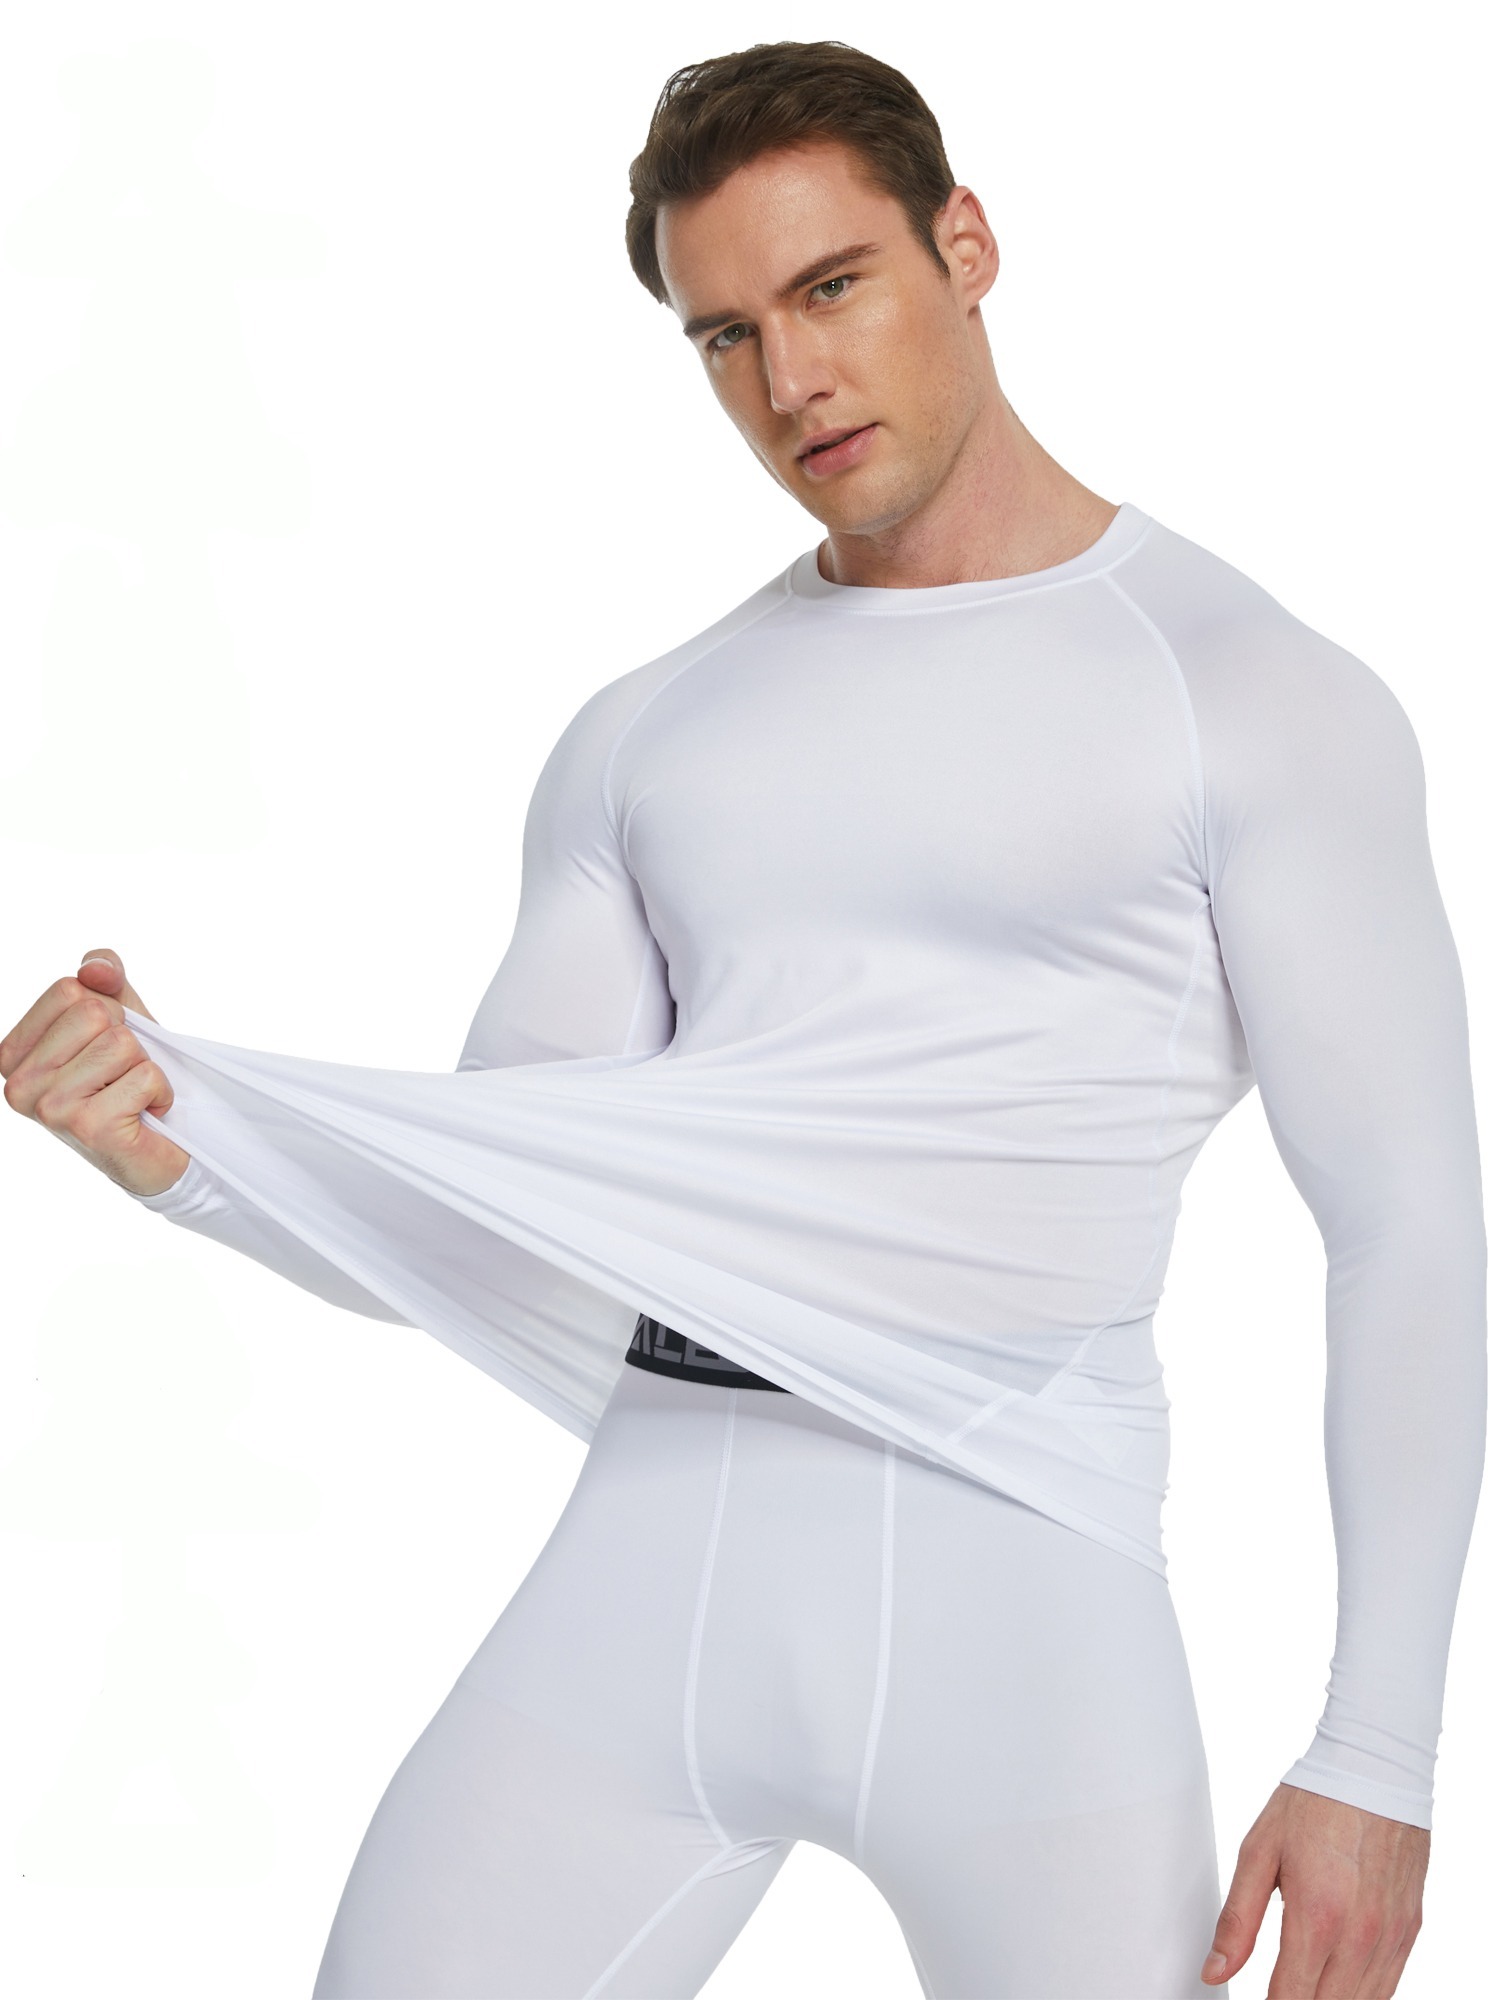 Telaleo Compression Shirts For Men Long Sleeve Athletic Base - Temu